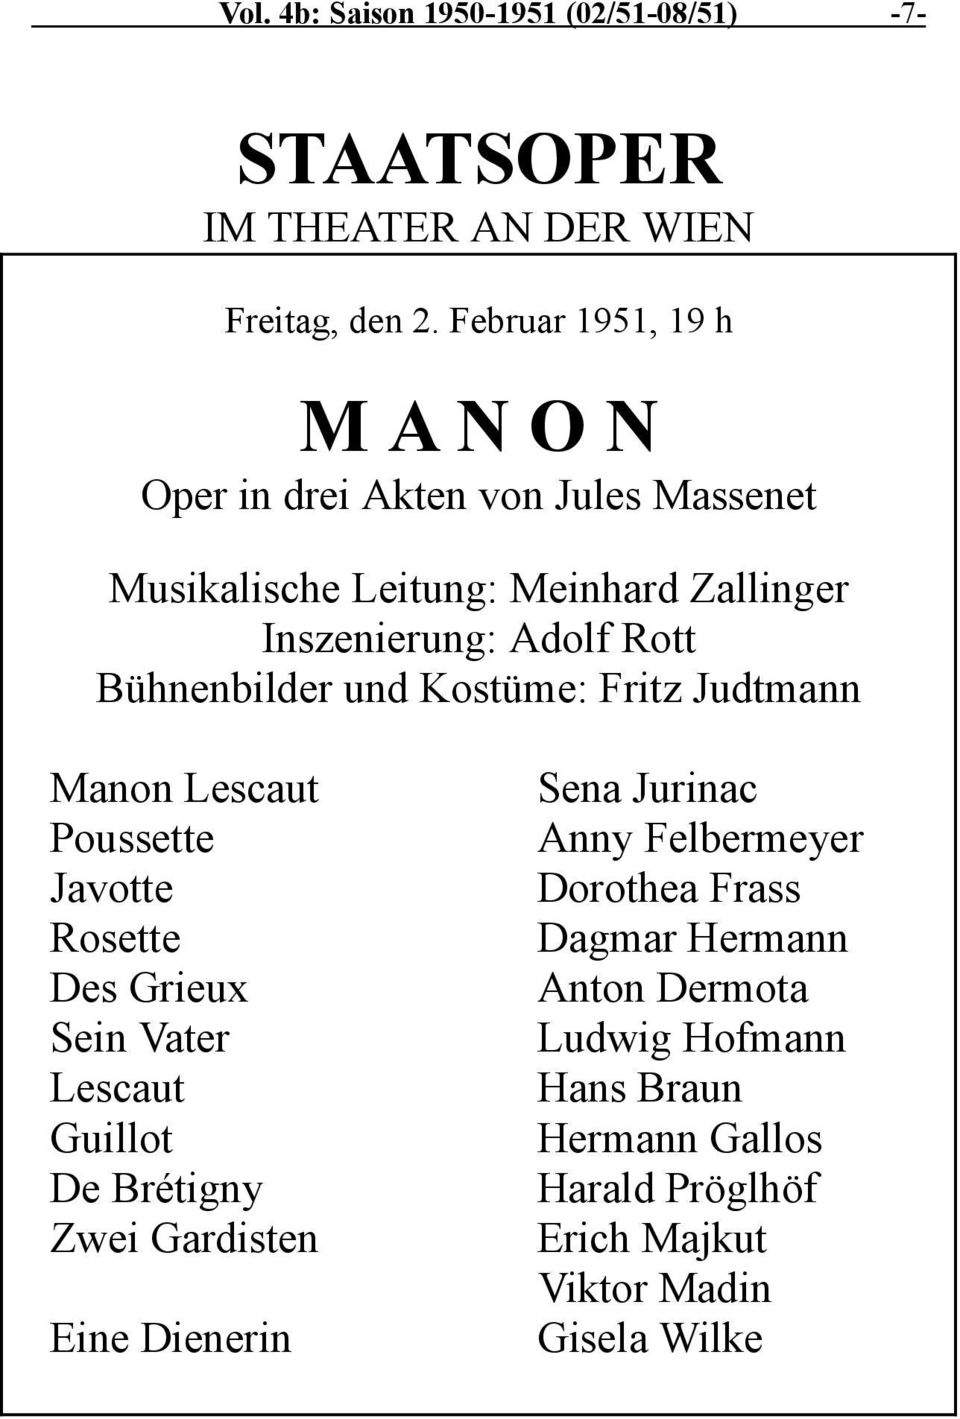 Bühnenbilder und Kostüme: Fritz Judtmann Manon Lescaut Poussette Javotte Rosette Des Grieux Sein Vater Lescaut Guillot De Brétigny Zwei